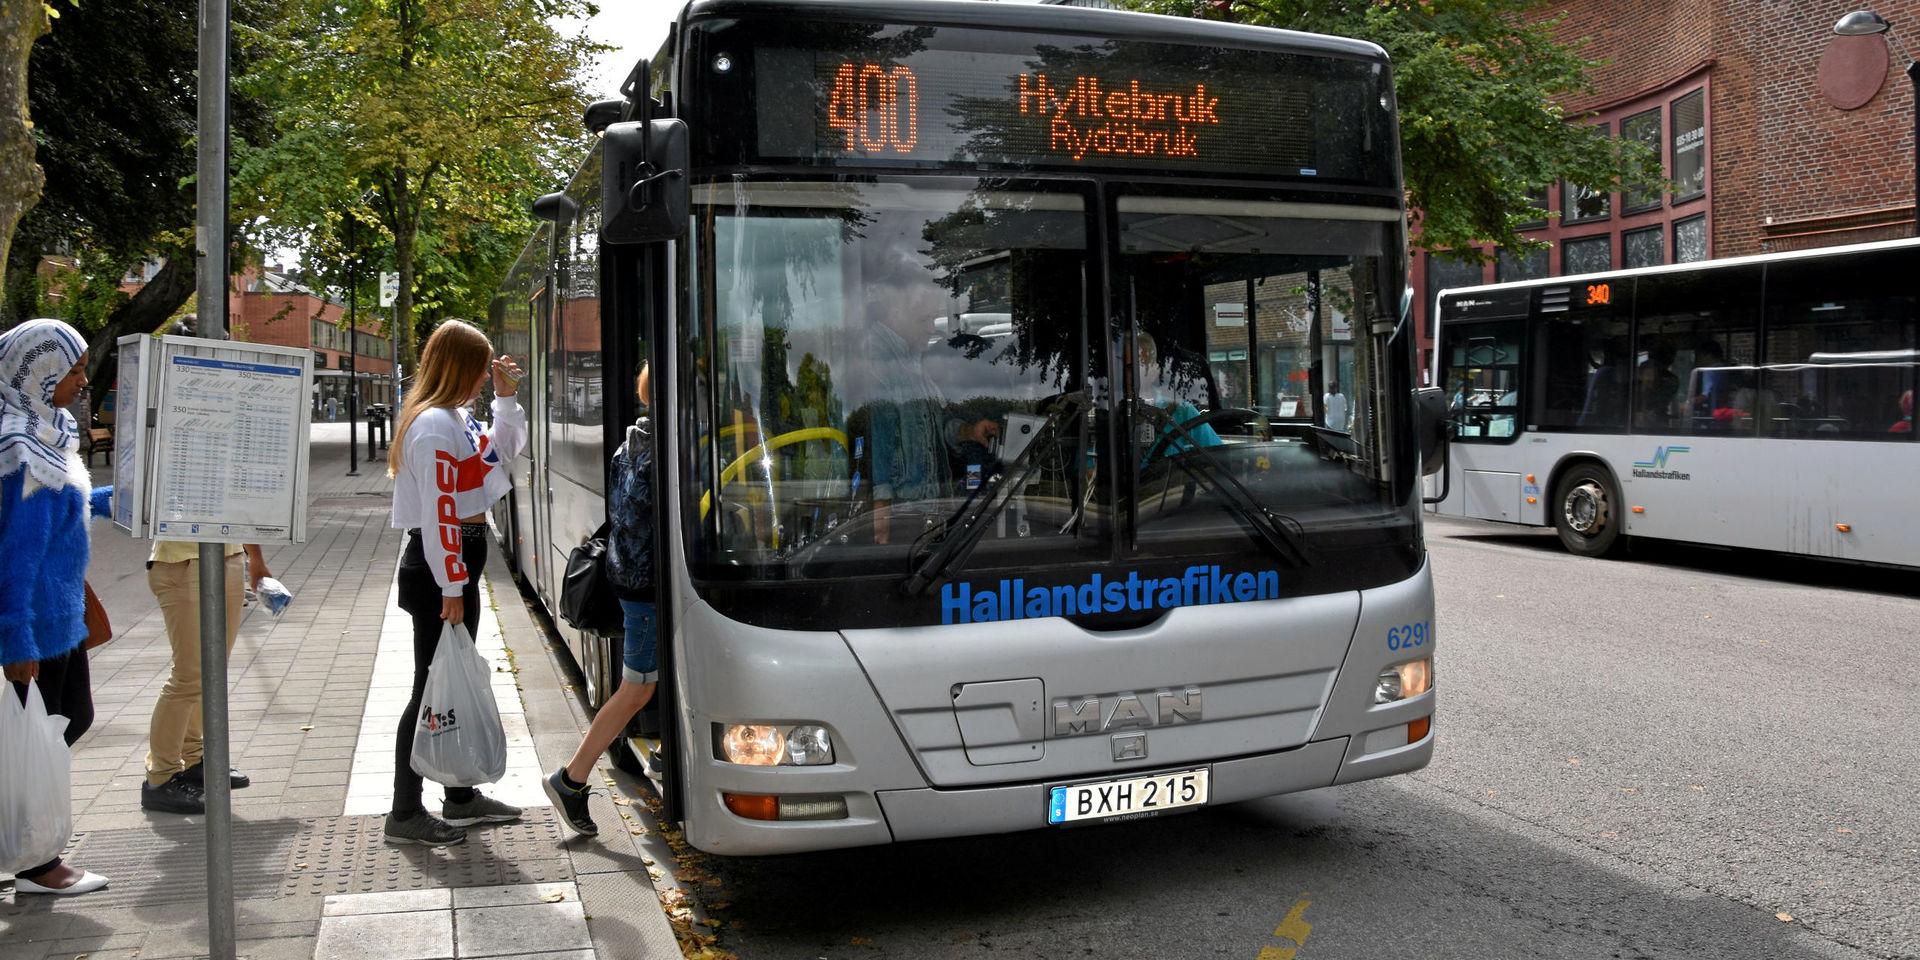 Populär. Sedan förra året har resandet på busslinje 400 mellan Hyltebruk och Halmstad ökat med 15 procent.